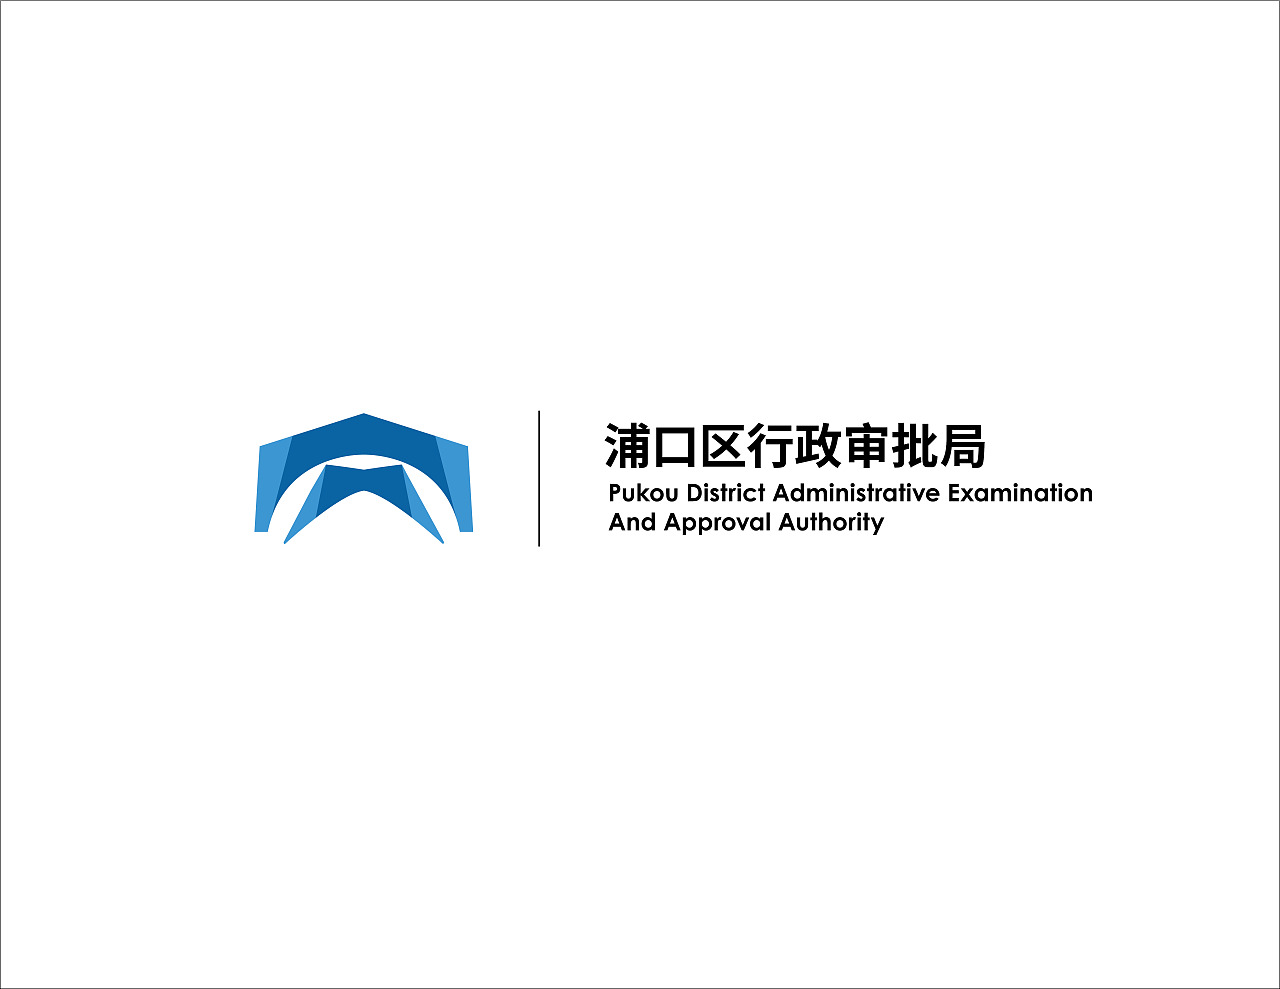 南京浦口区行政审批局logo设计